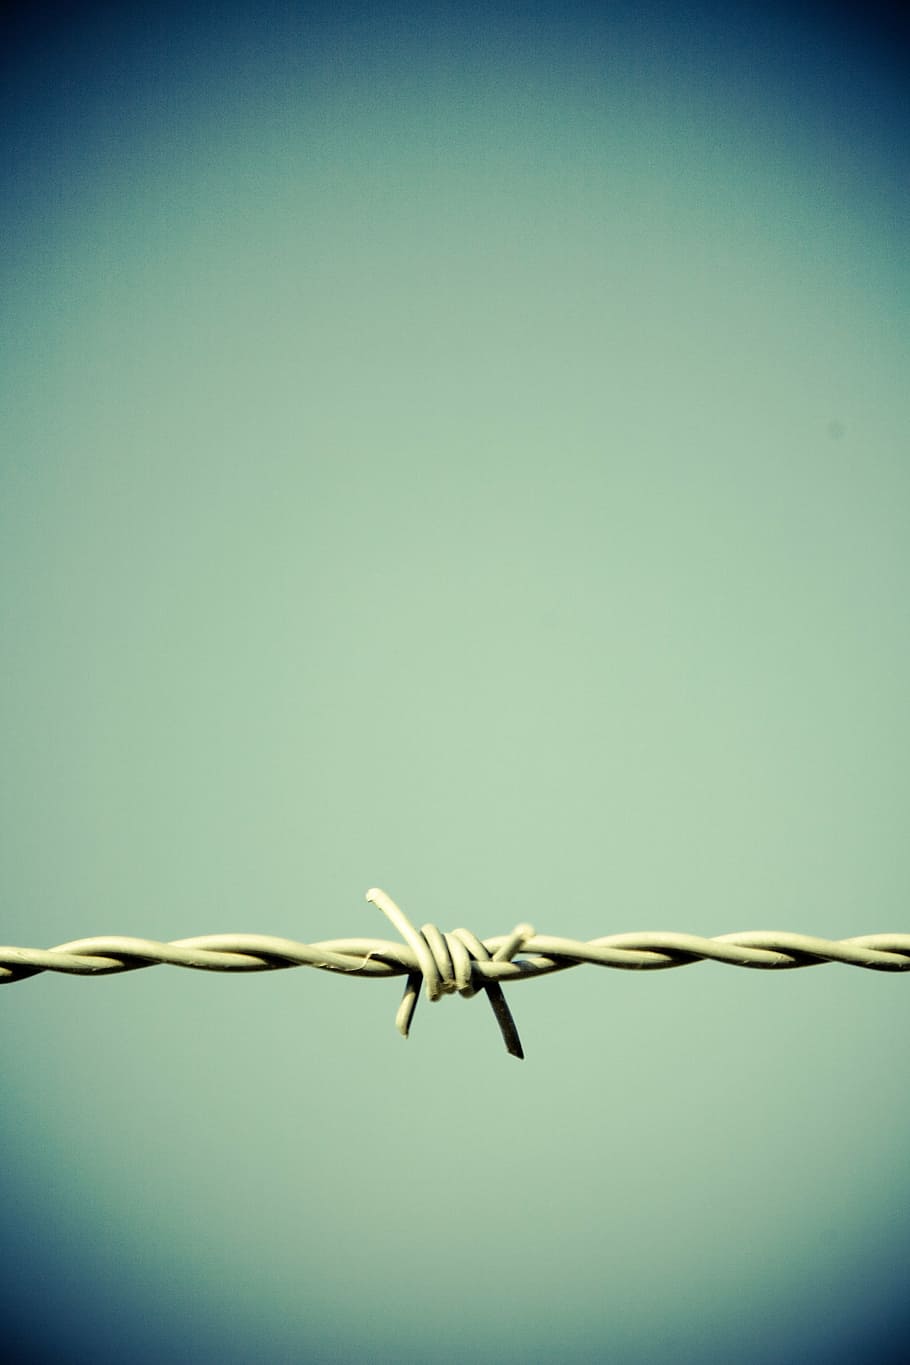 alambre de púas gris, alambre de púas, cerca, frontera, metal, espina, verrostst, riesgo, encarcelado, demarcación